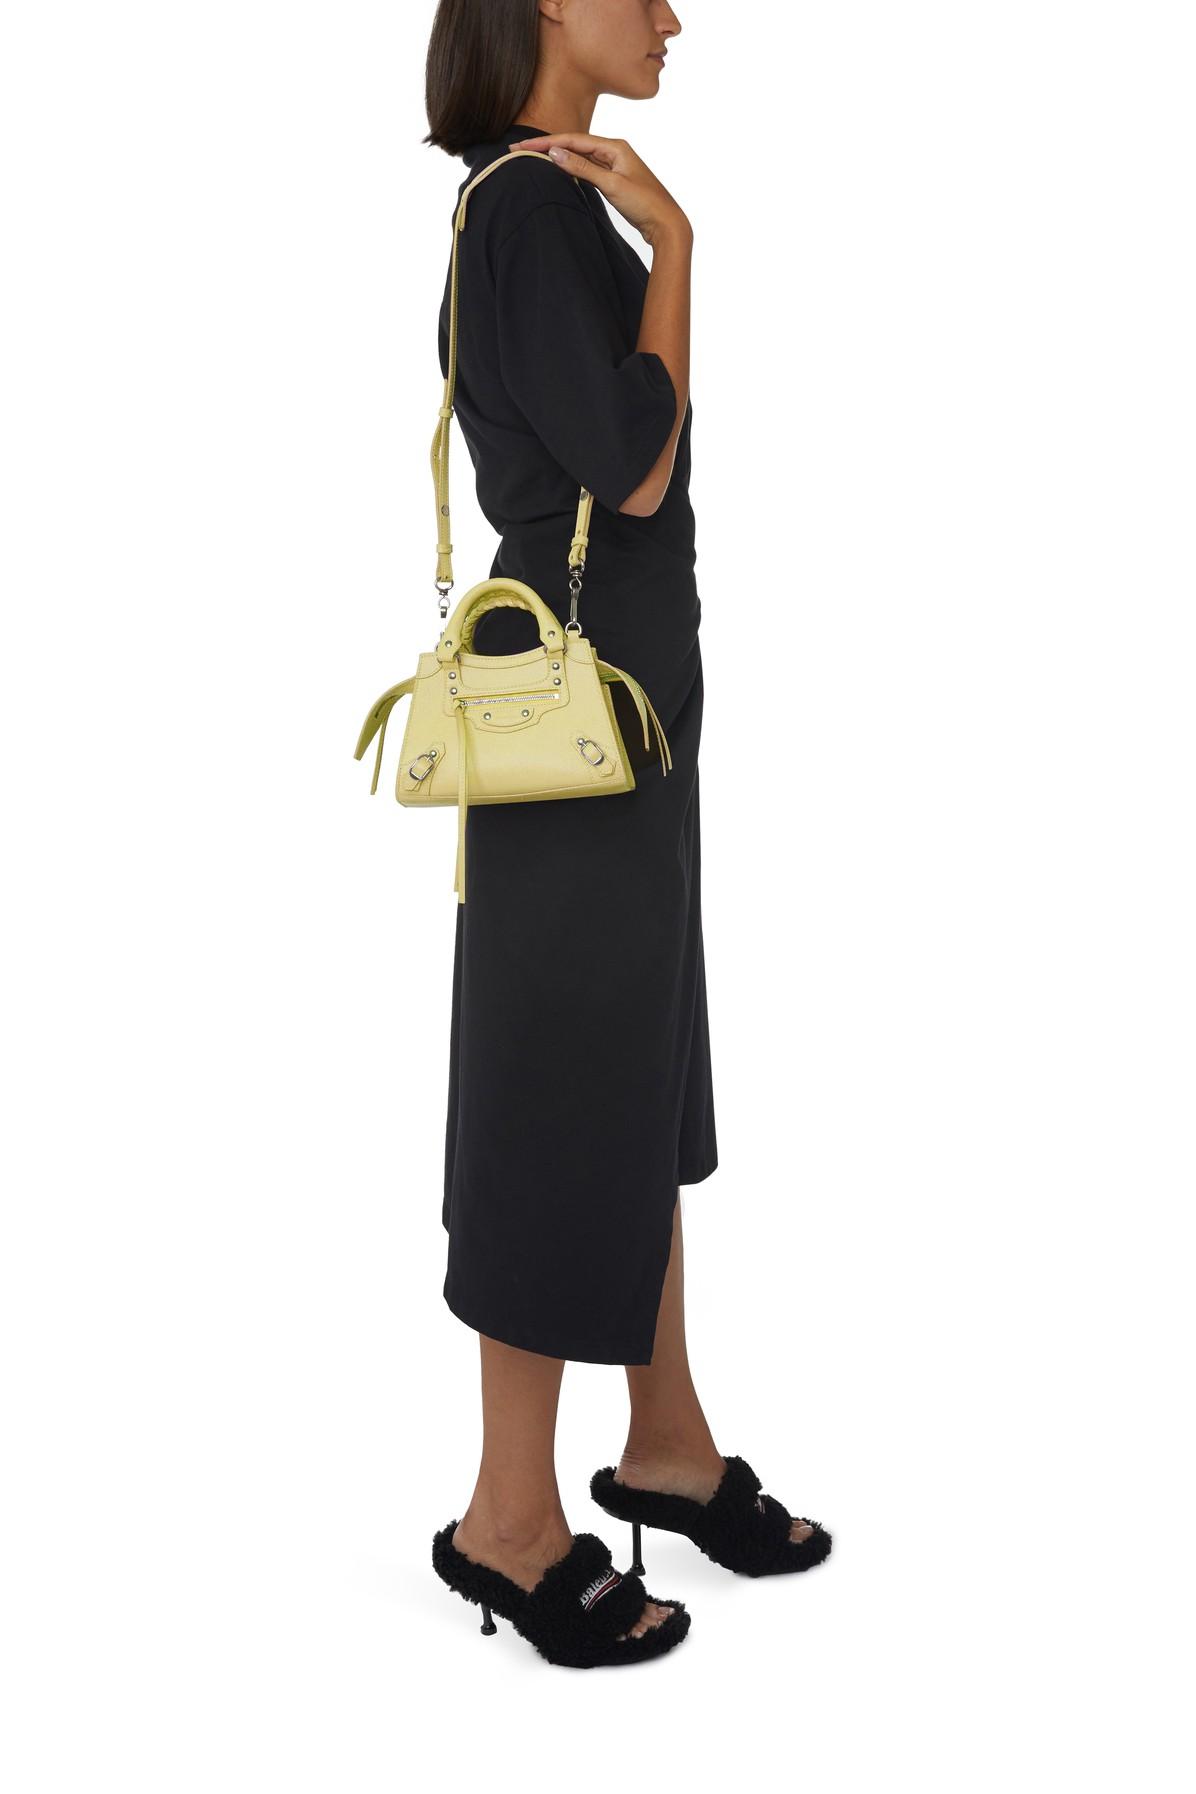 Balenciaga Leather Neo Classic Mini Top Handle Bag in Yellow - Lyst